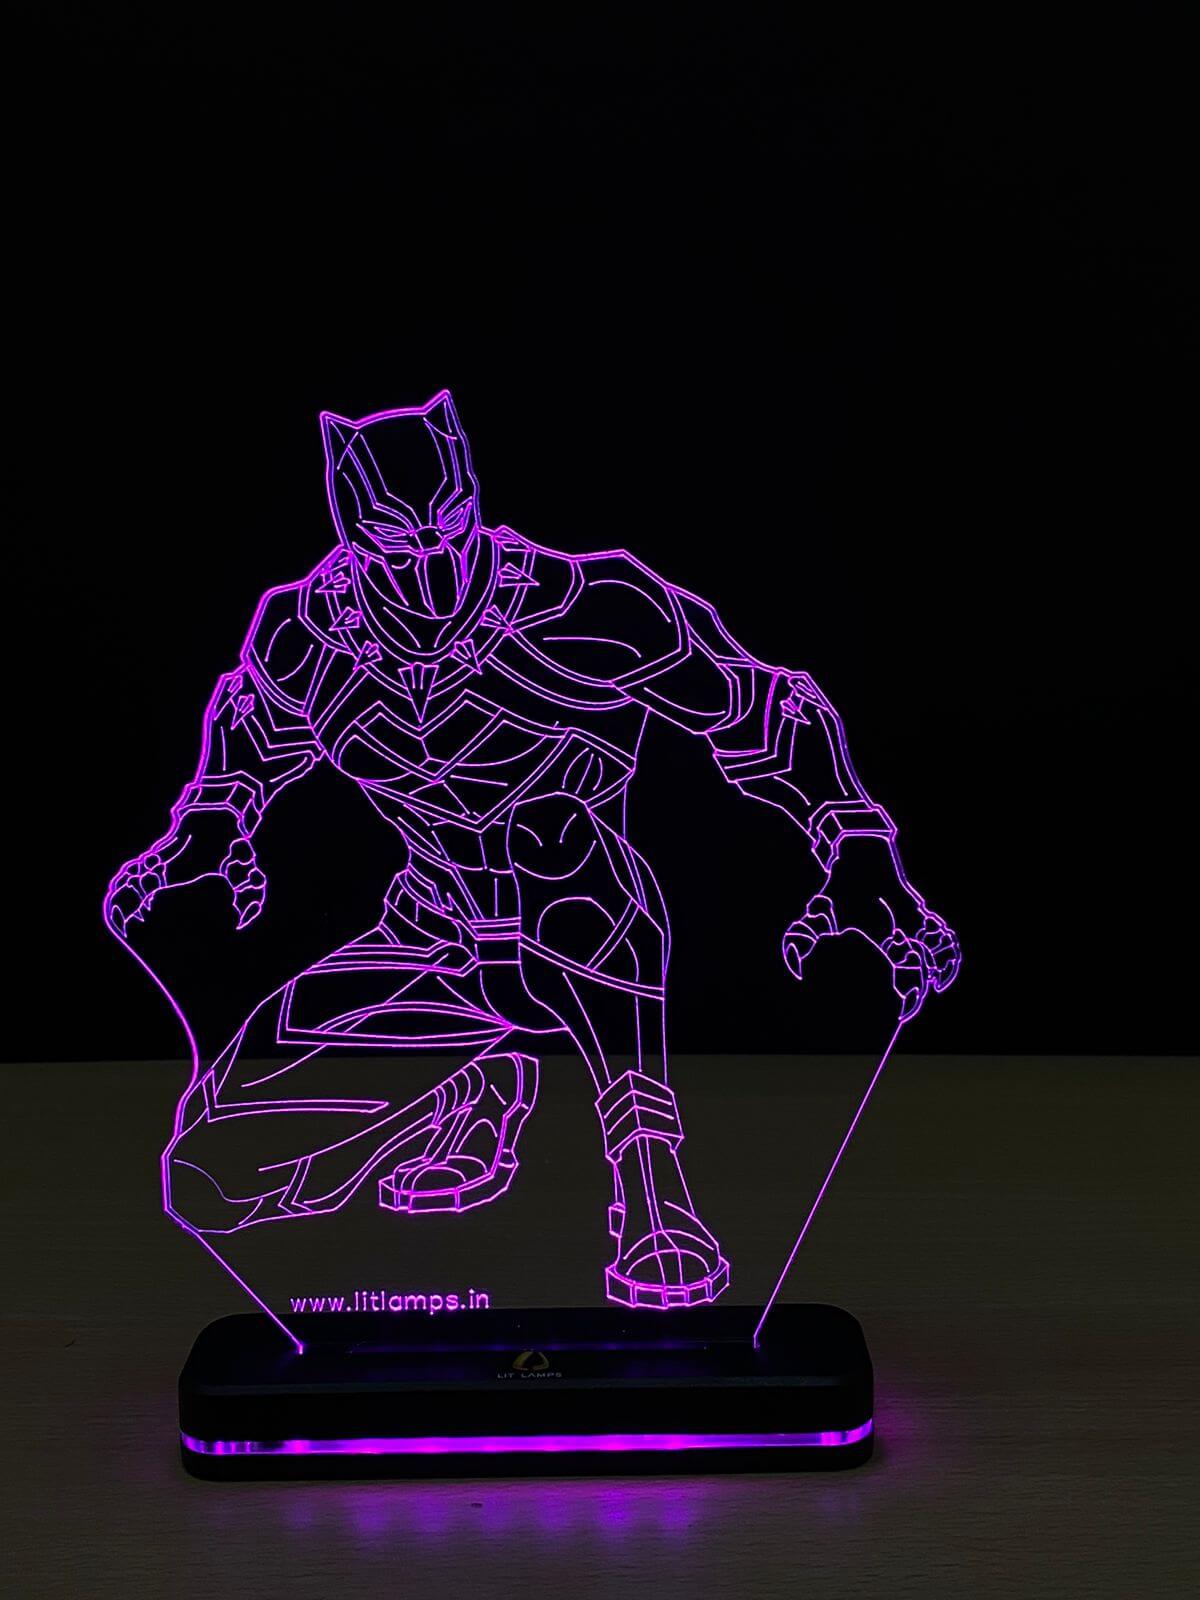 Black Panther Marvel Avengers Decor Aesthetic 3D Illusion Lamp by LIT Lamps - LIT Lamps - Black Panther 3D LED Lamp-3d Lamps